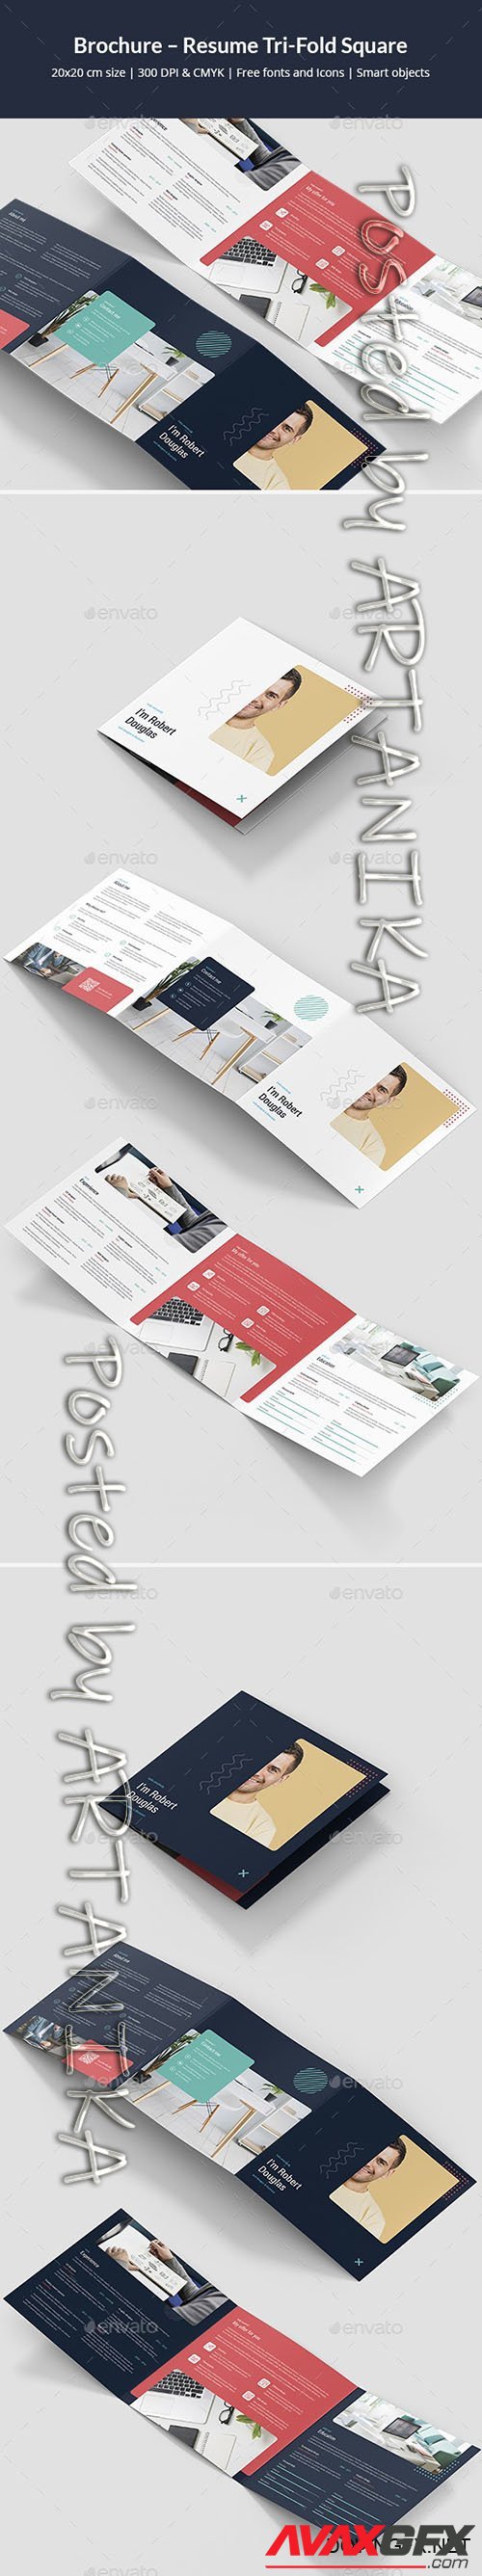 GraphicRiver - Brochure  Resume Tri-Fold Square 24770880